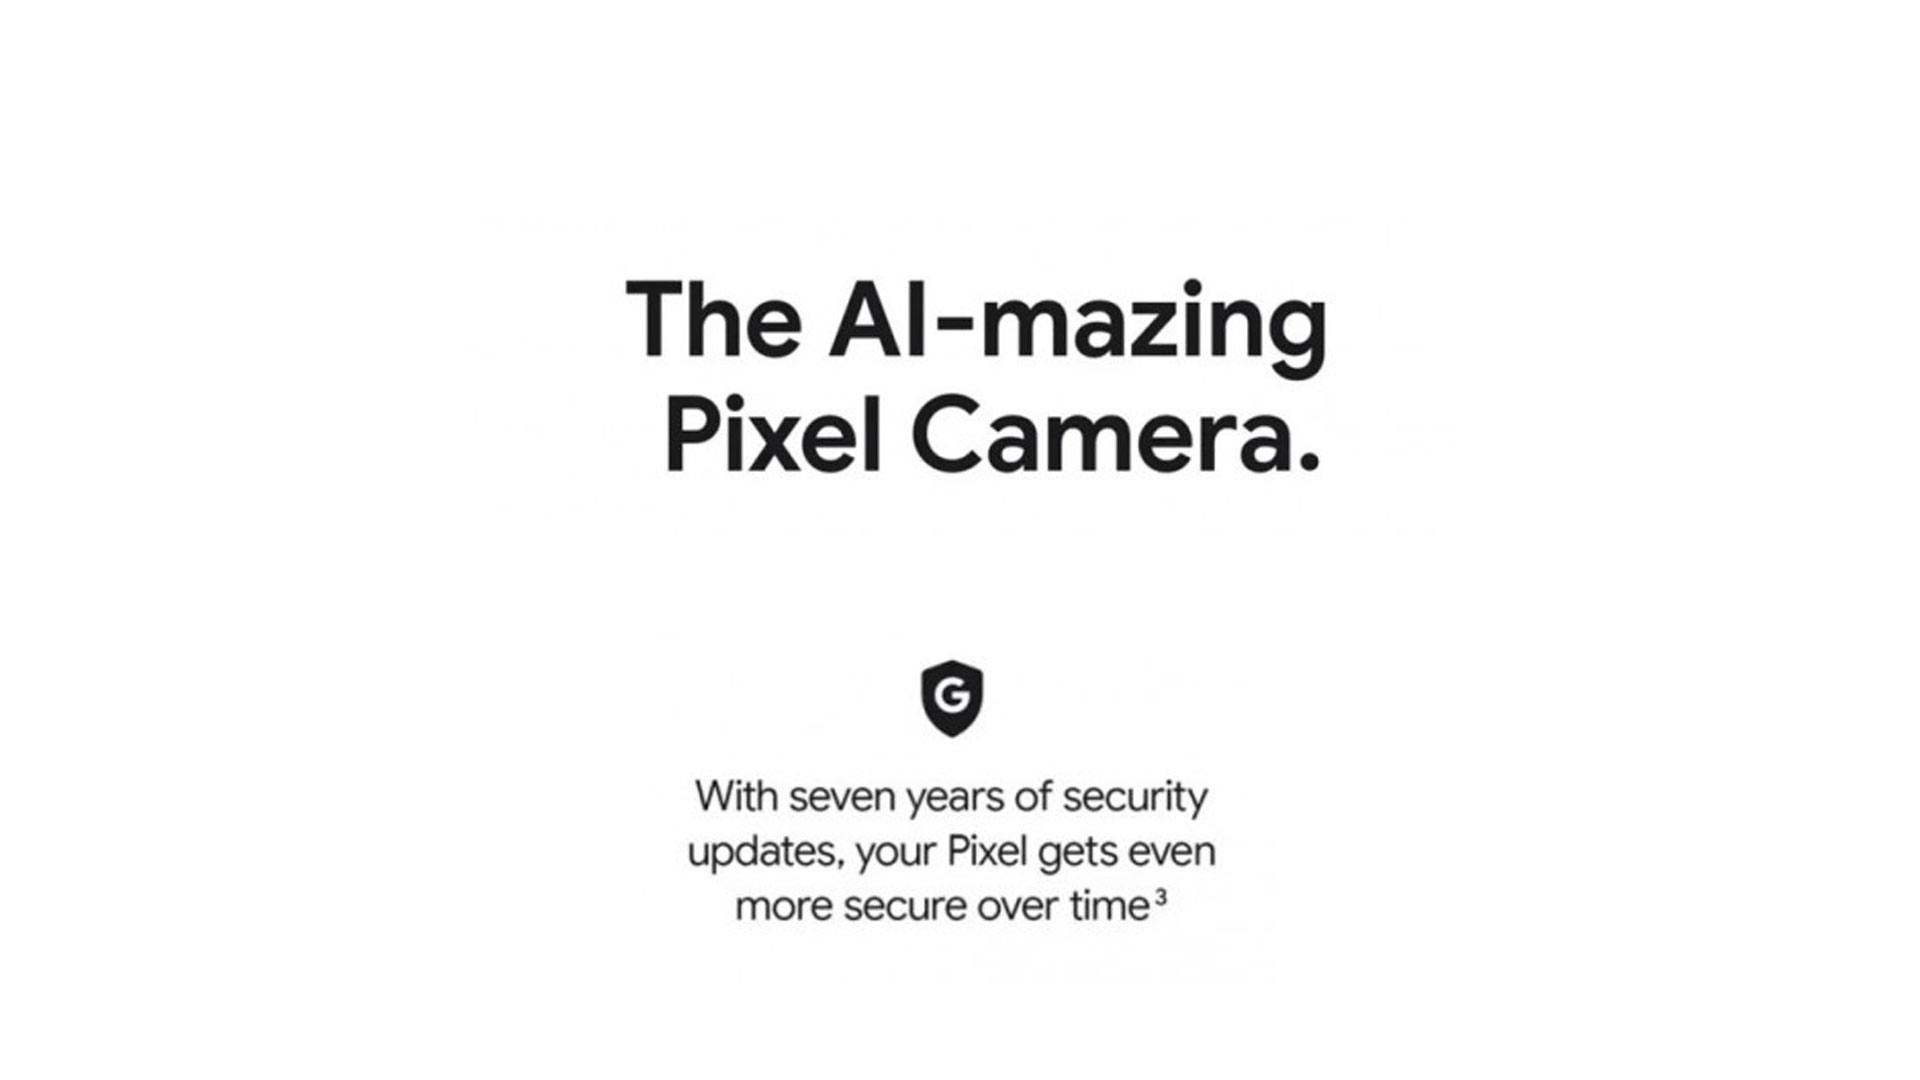 گوگل دوربین پیکسل 8a را با عنوان “AI-mazing” تبلیغ می‌کند؛ 7 سال آپدیت سیستم عاملی